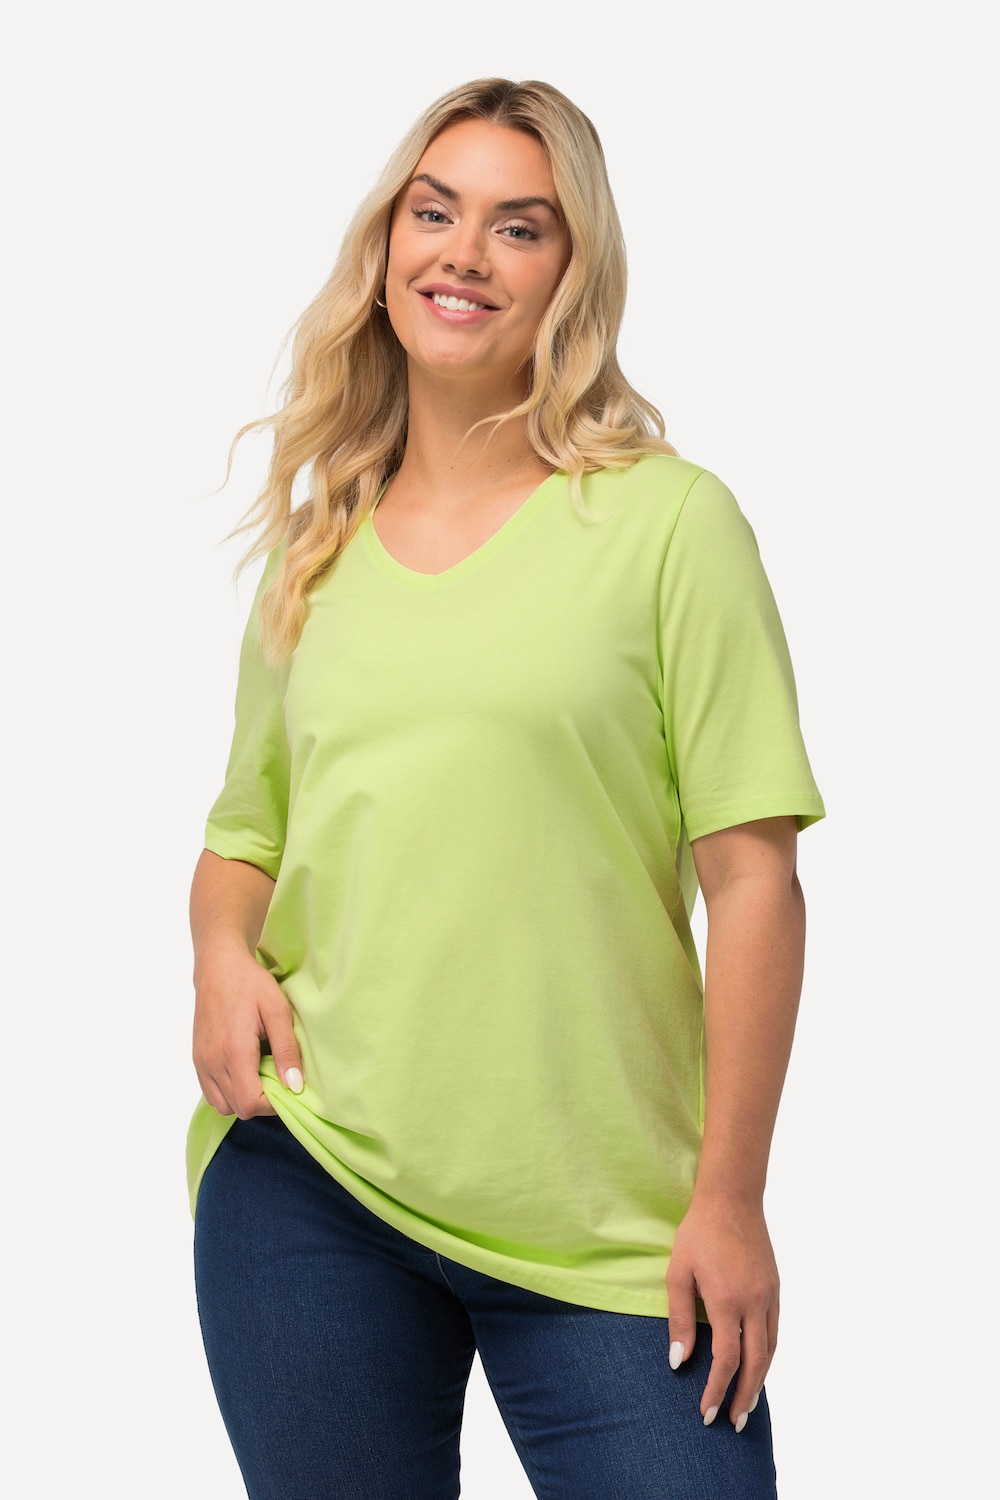 Grote Maten T-shirt, Dames, groen, Maat: 46/48, Katoen, Ulla Popken